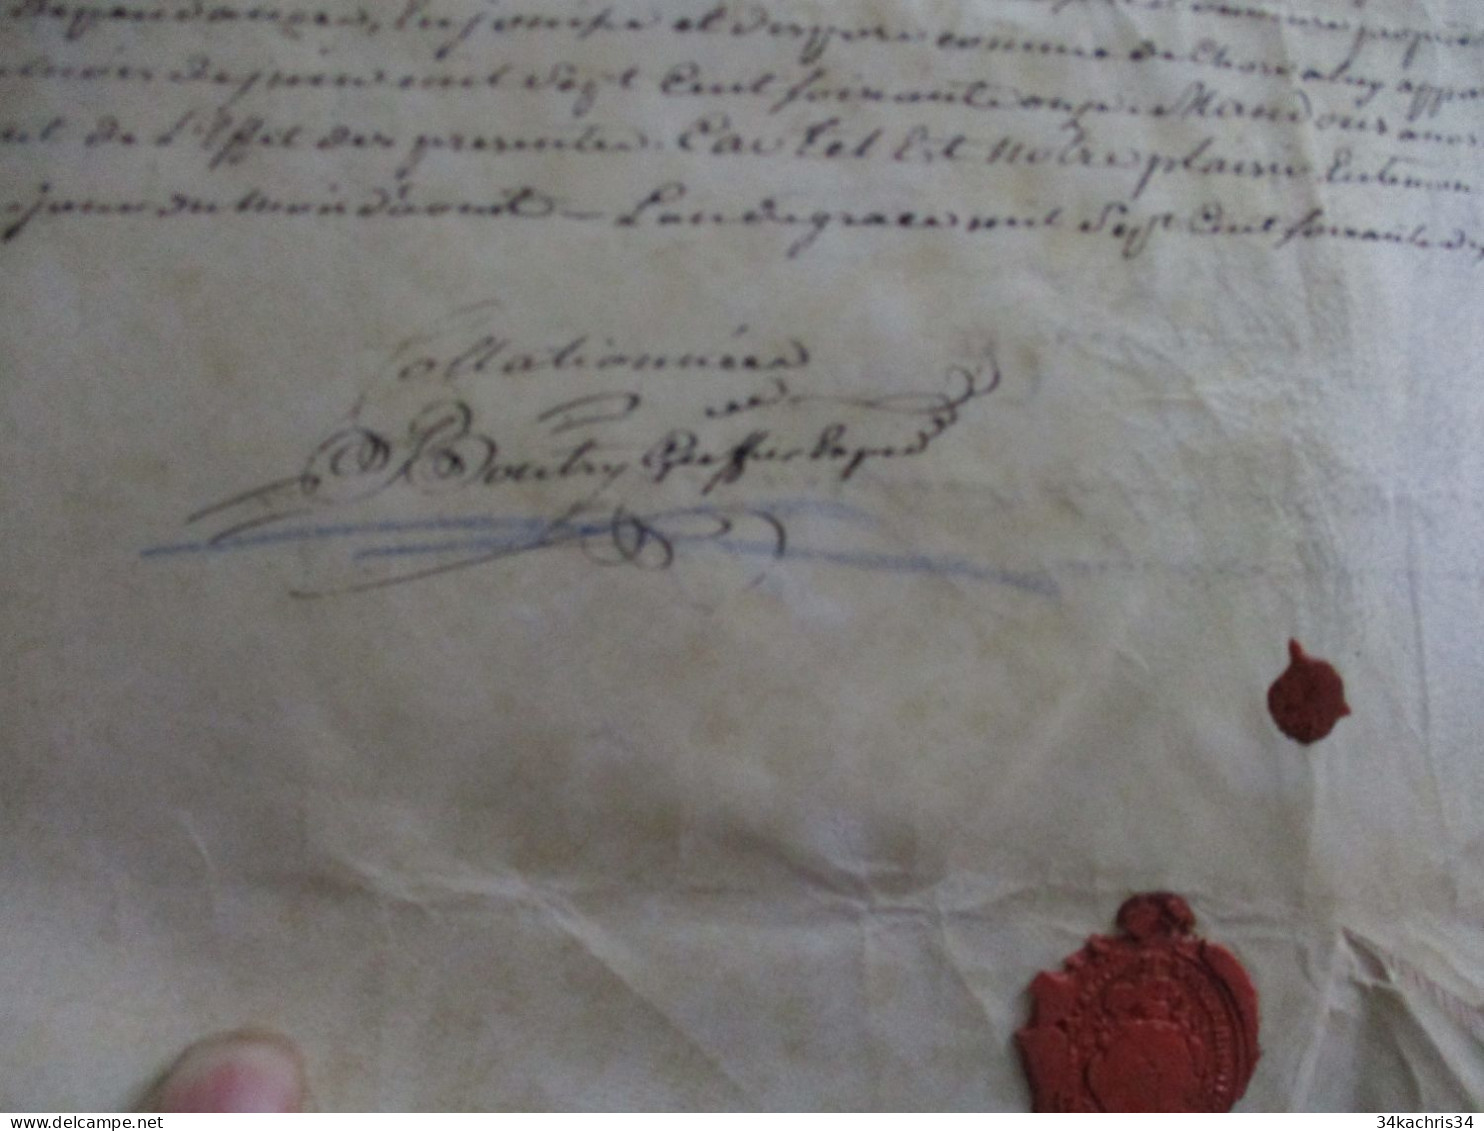 1777 pièce signée BOUTRY avec sceau généralité de Bourges Aubigny Affaires de rentes après adjudication à lire